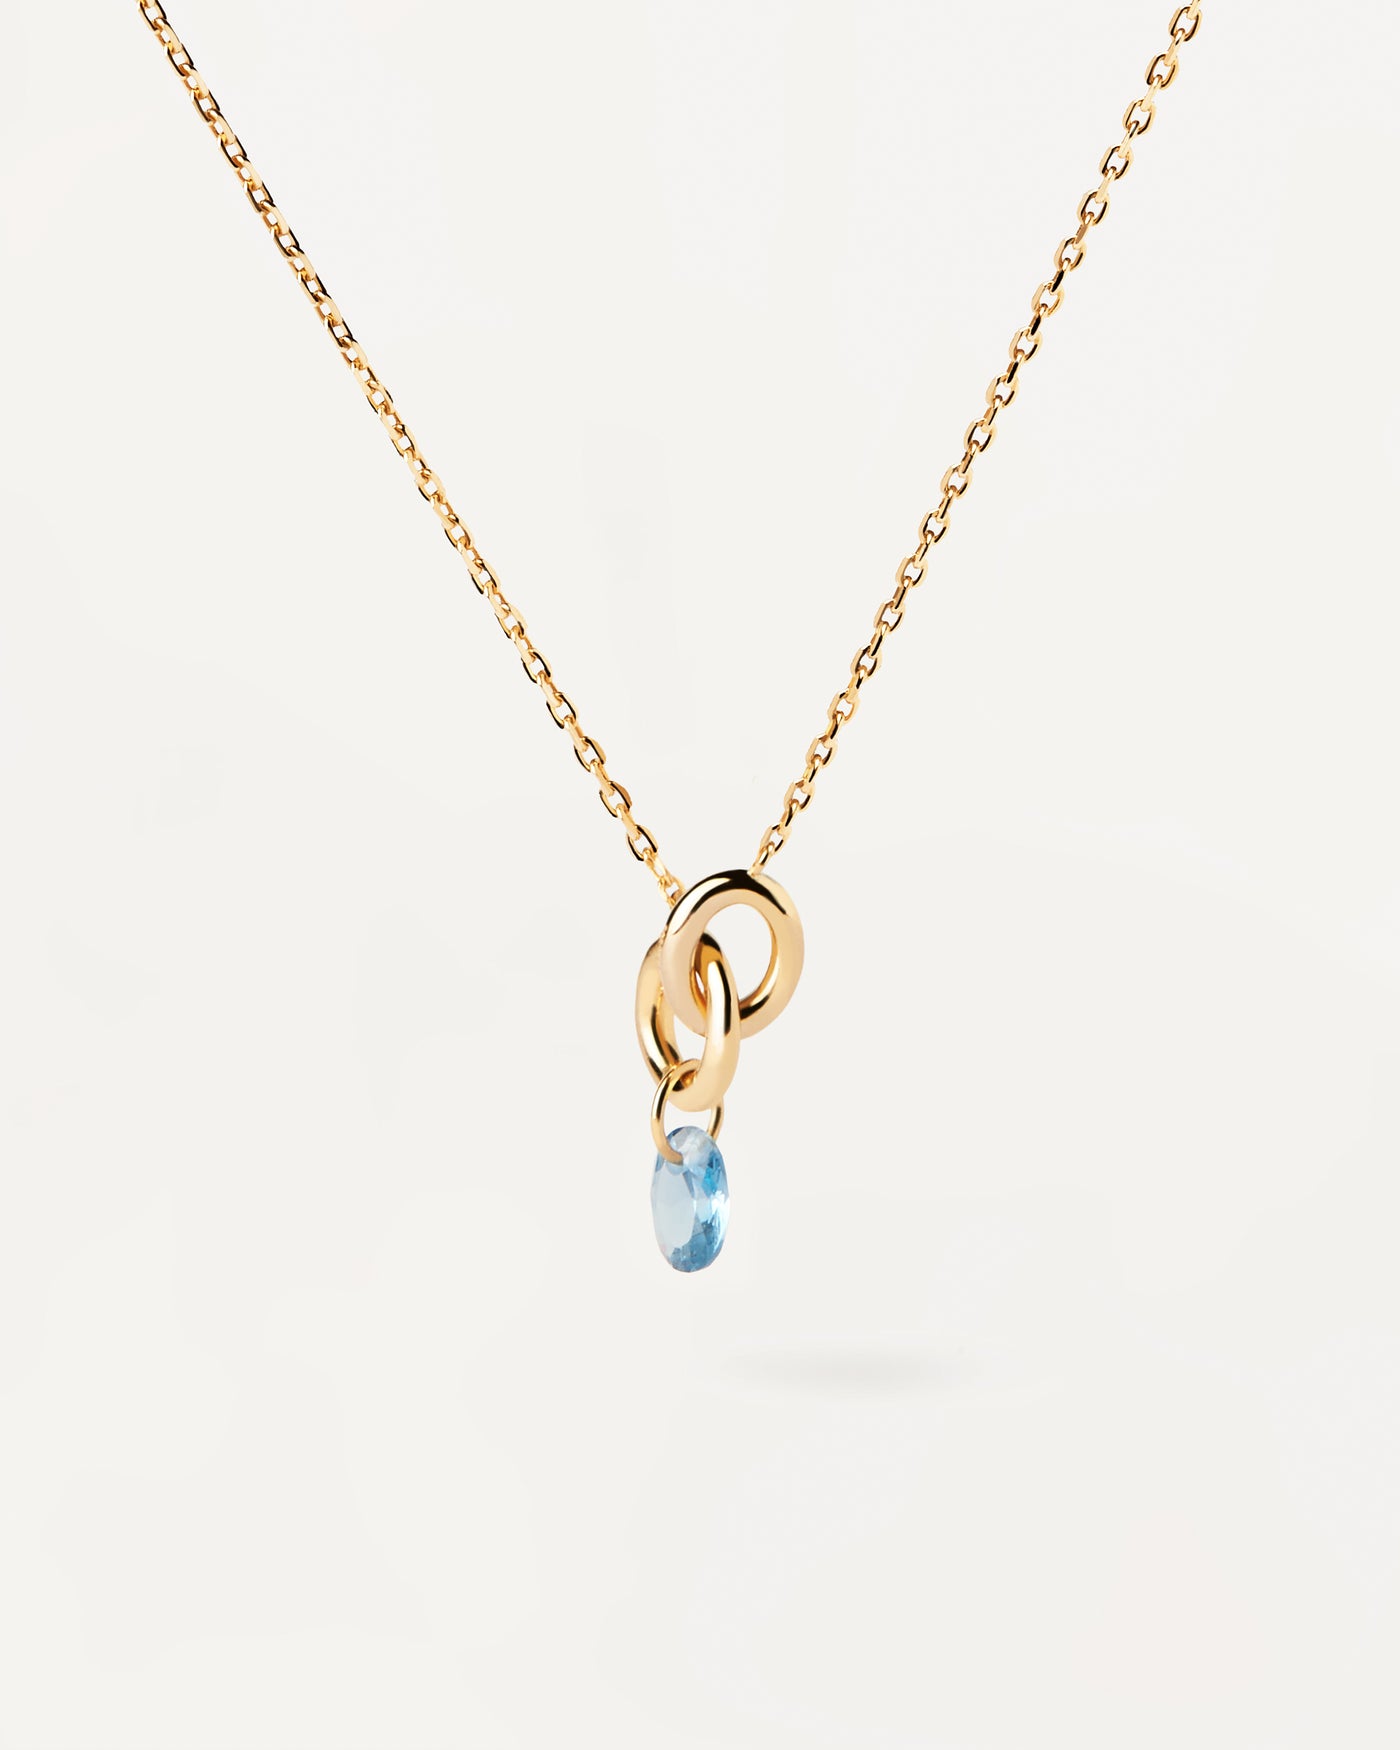 Lily blauem halskette. Vergoldete Halskette mit zwei ineinandergreifenden Ringen und blauem Zirkonia-Anhänger. Erhalten Sie die neuesten Produkte von PDPAOLA. Geben Sie Ihre Bestellung sicher auf und erhalten Sie diesen Bestseller.